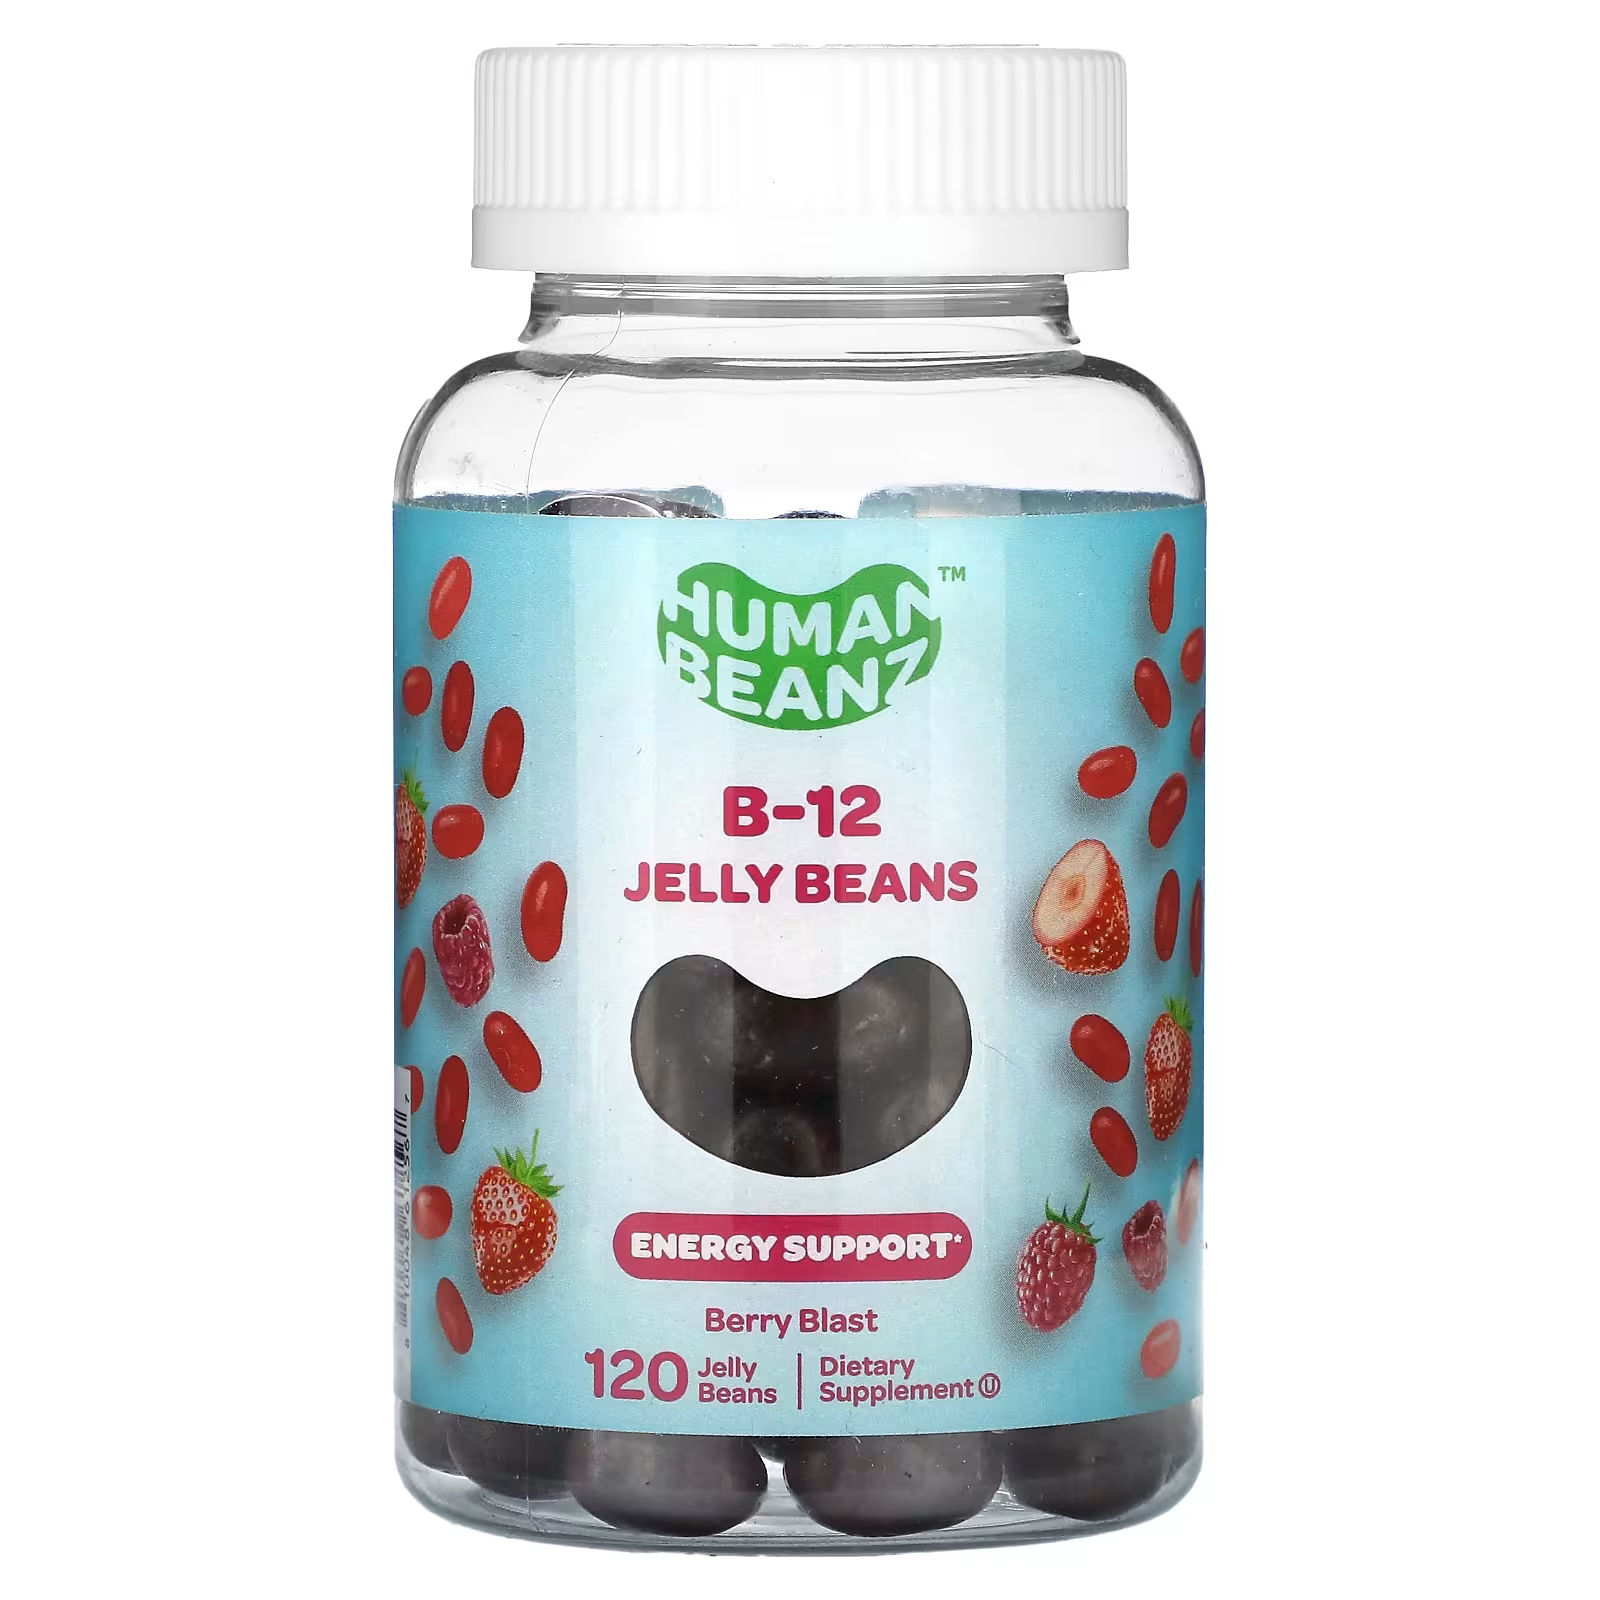 Пищевая добавка Human Beanz B-12 Jelly Beans Berry Blast, 120 желейных бобов